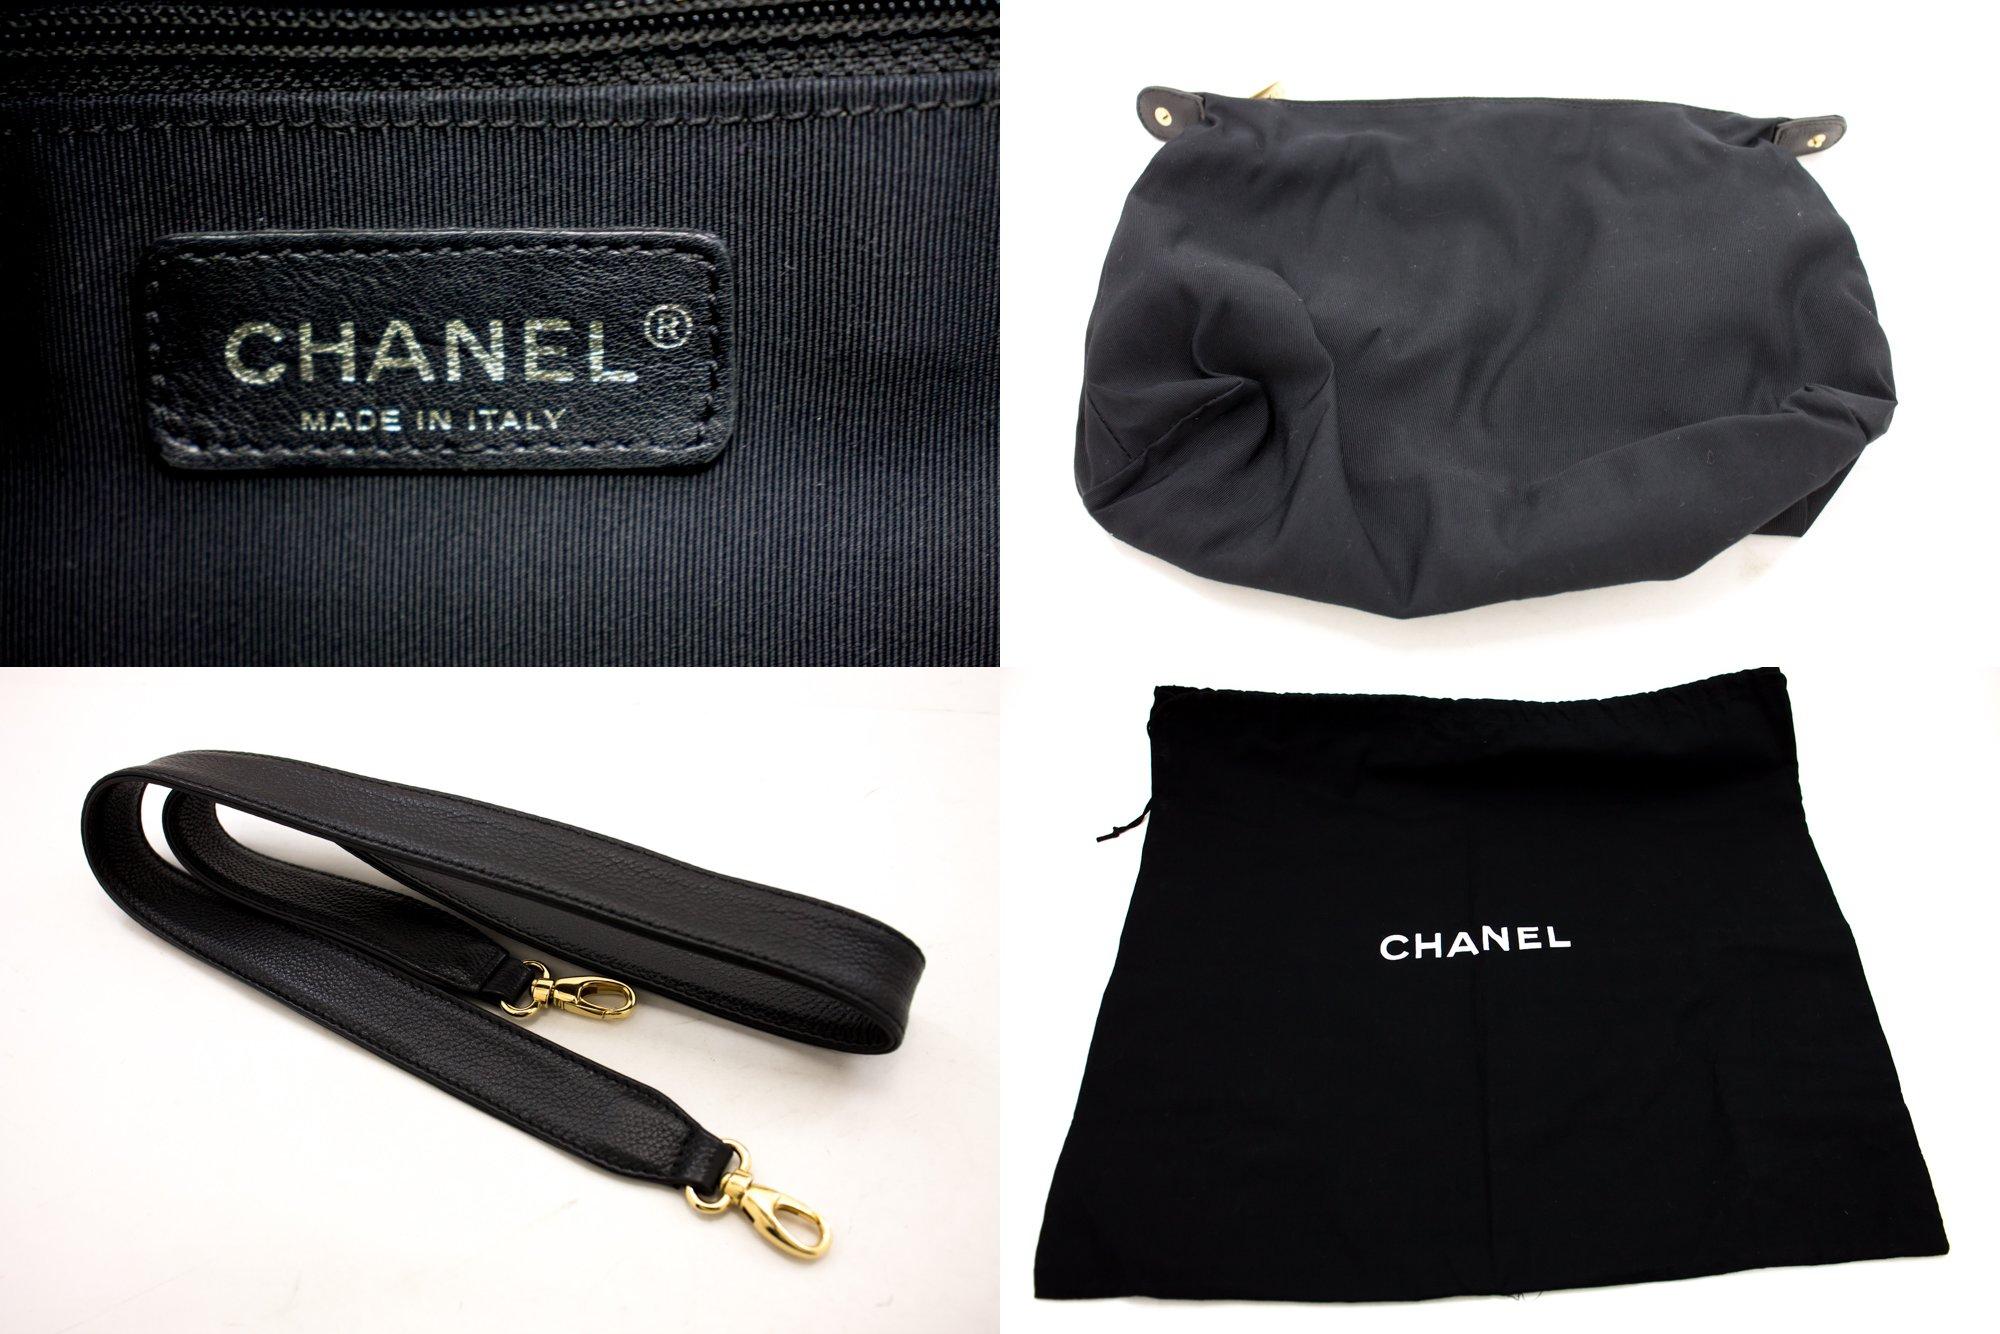 CHANEL Executive Tote 2Way Caviar Shoulder Bag Handbag Black 4